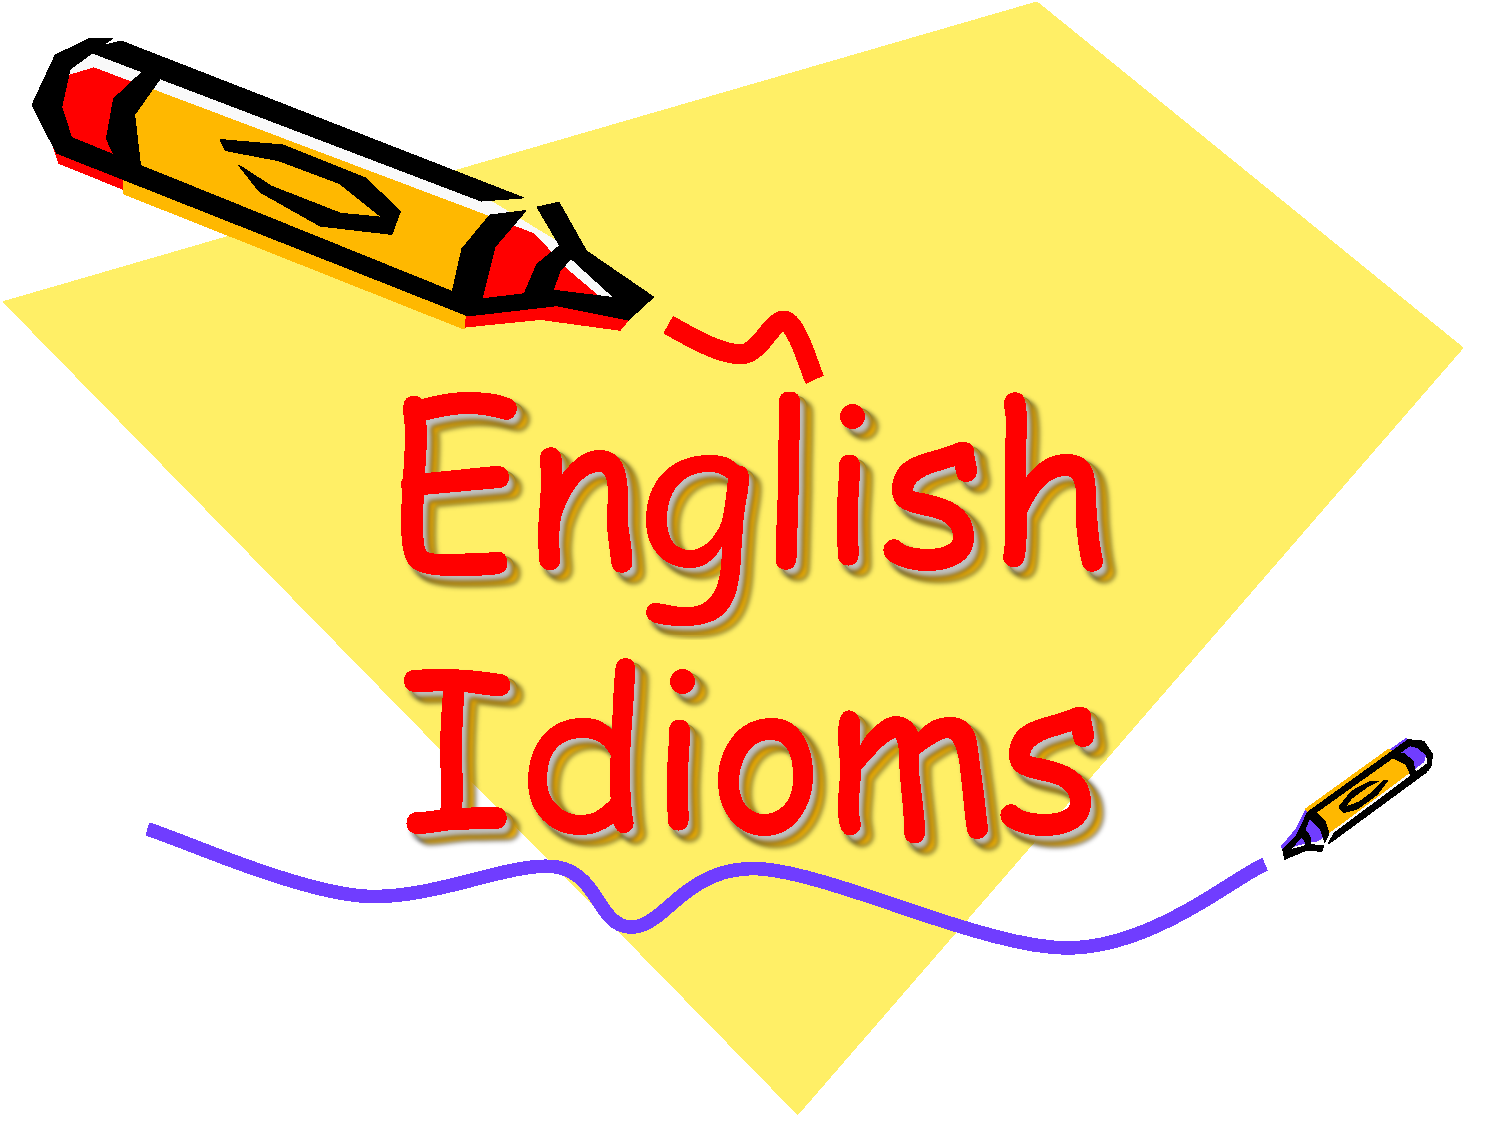 4 Phương pháp học idioms hiệu quả trong tiếng Anh giao tiếp